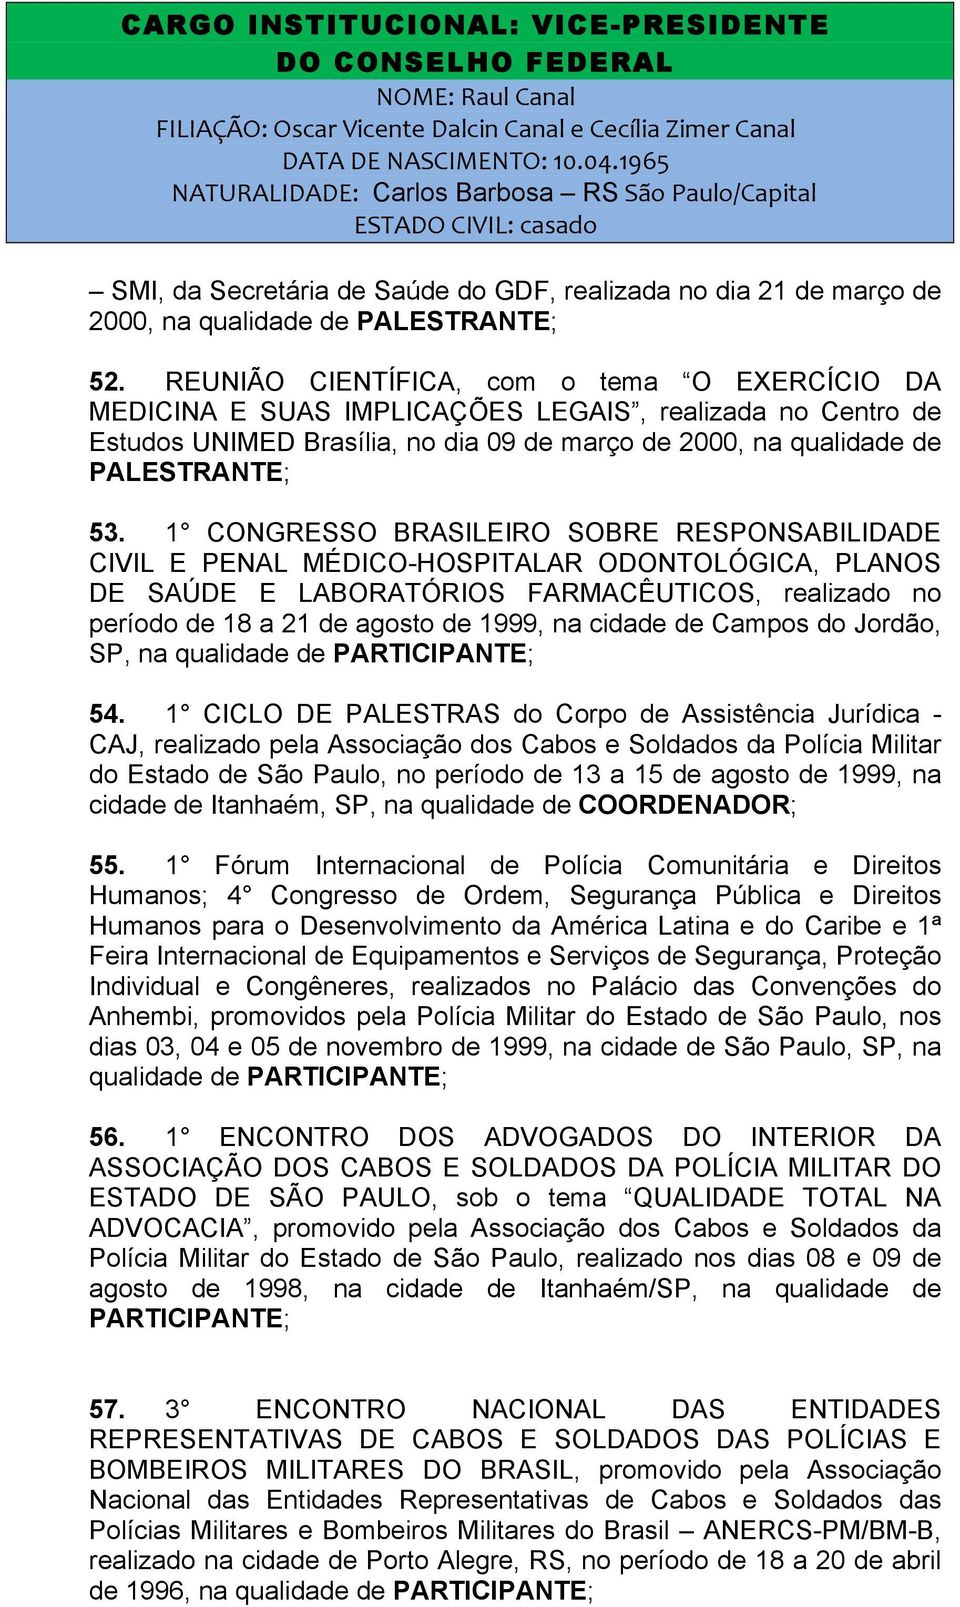 1 CONGRESSO BRASILEIRO SOBRE RESPONSABILIDADE CIVIL E PENAL MÉDICO-HOSPITALAR ODONTOLÓGICA, PLANOS DE SAÚDE E LABORATÓRIOS FARMACÊUTICOS, realizado no período de 18 a 21 de agosto de 1999, na cidade